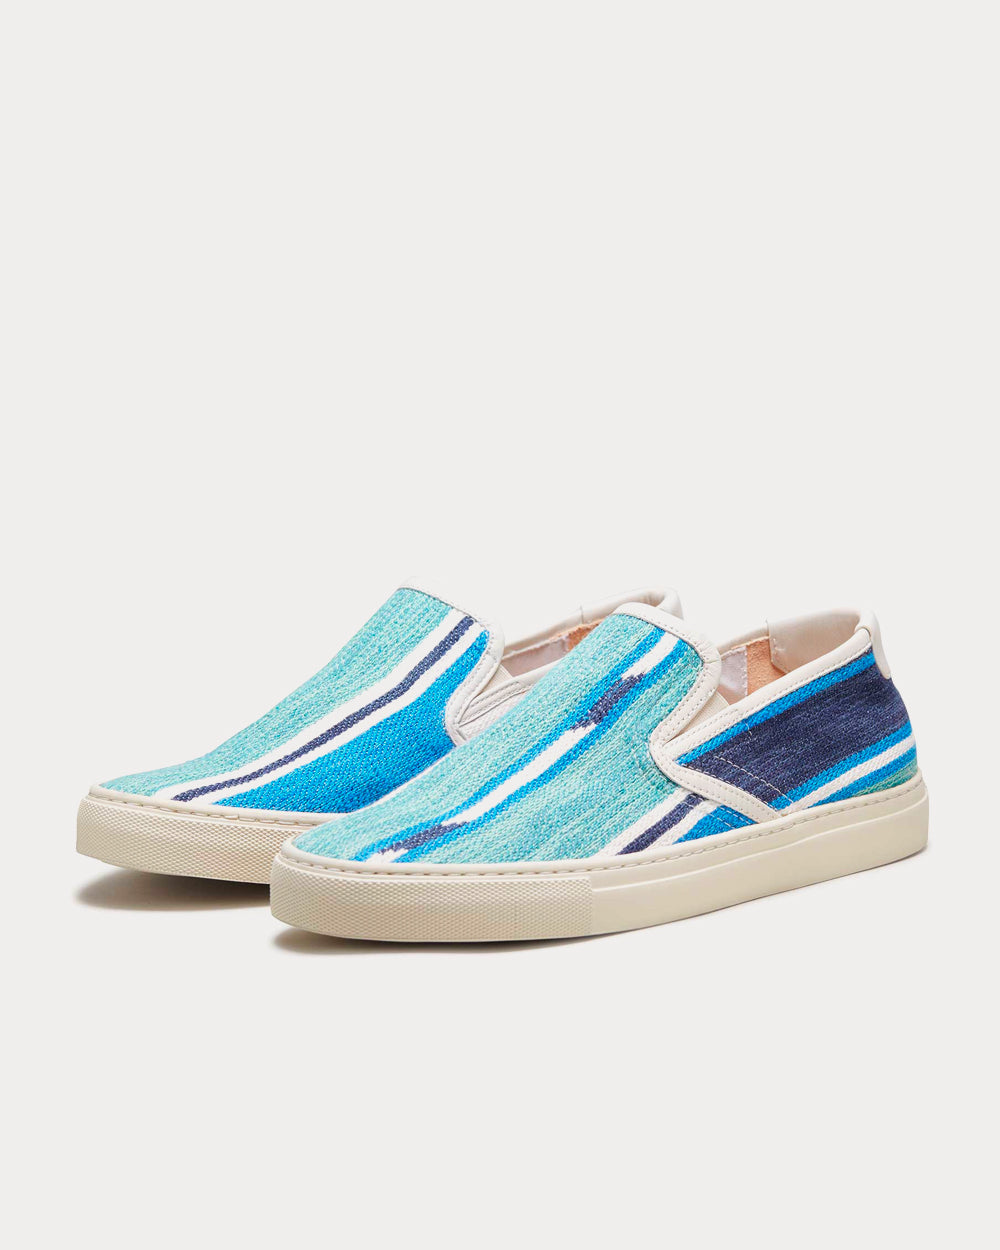 Zespa - Textile Fantaisie Kilim Bleu Slip On Sneakers